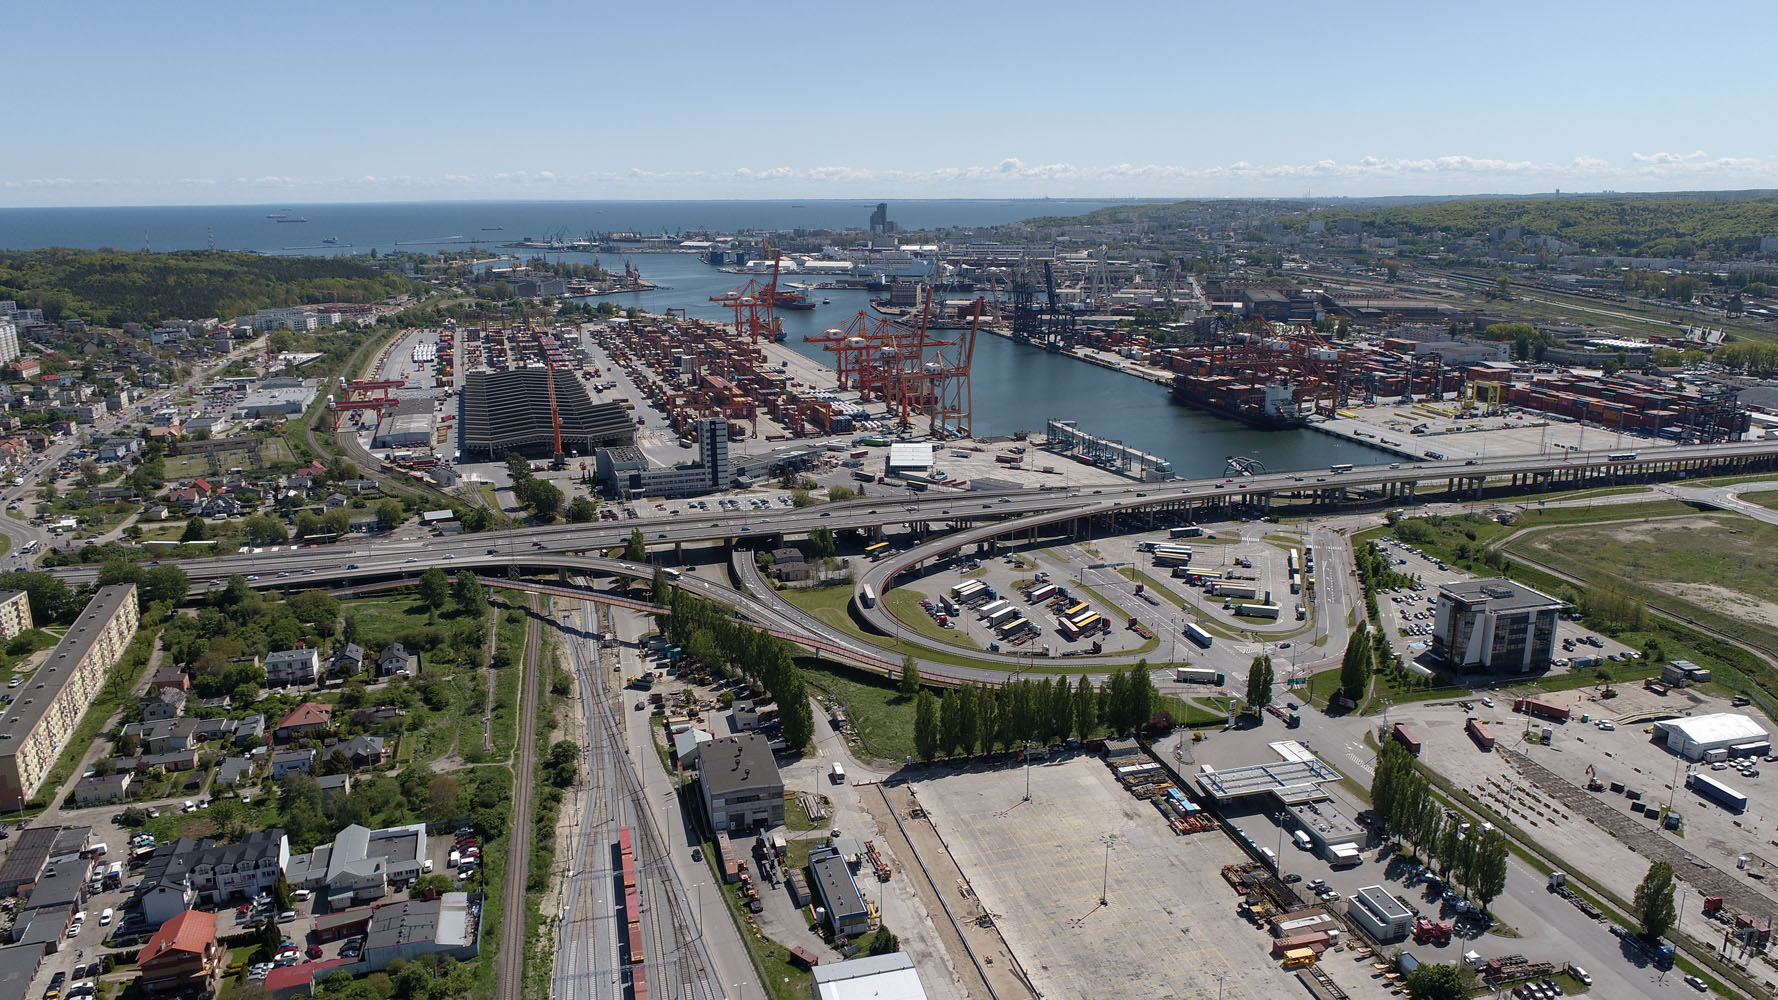 Port of Gdynia development towards Smart Port - MarinePoland.com